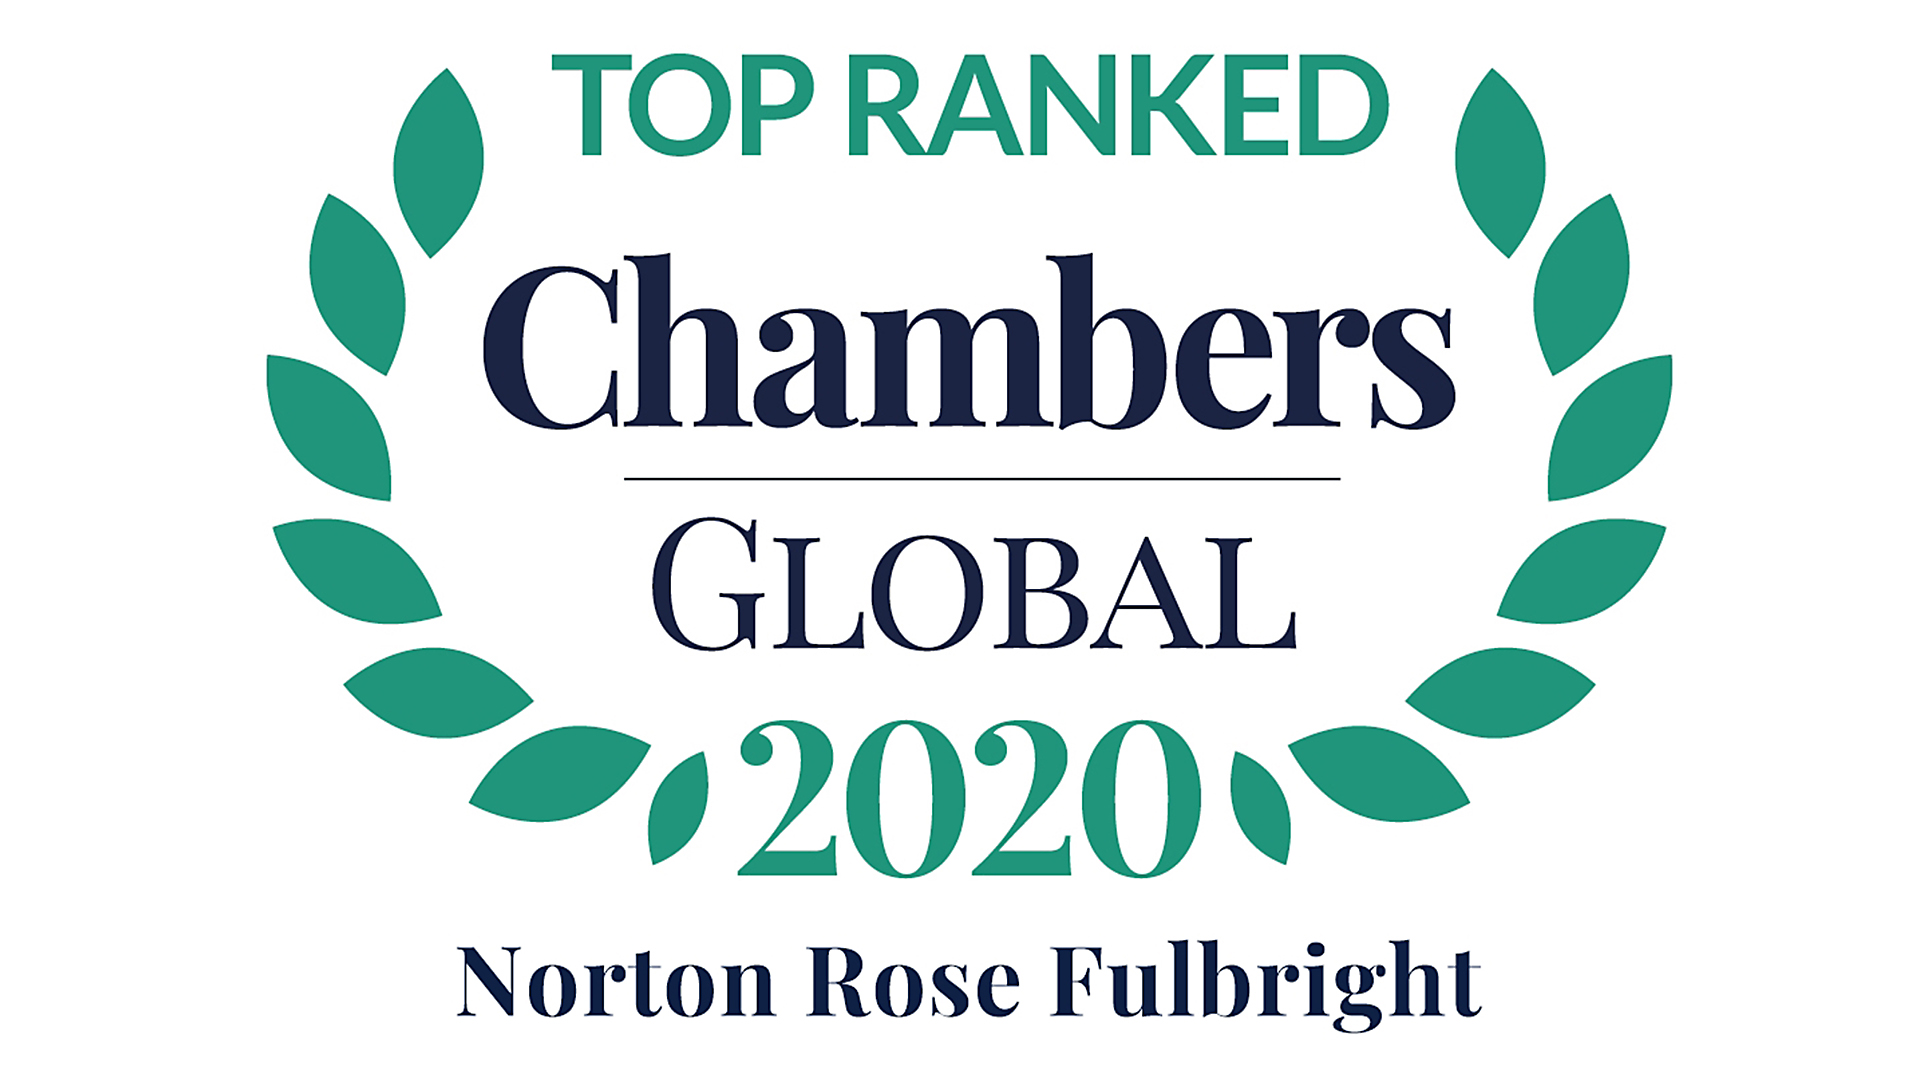 Top ranked Chambers Global 2020